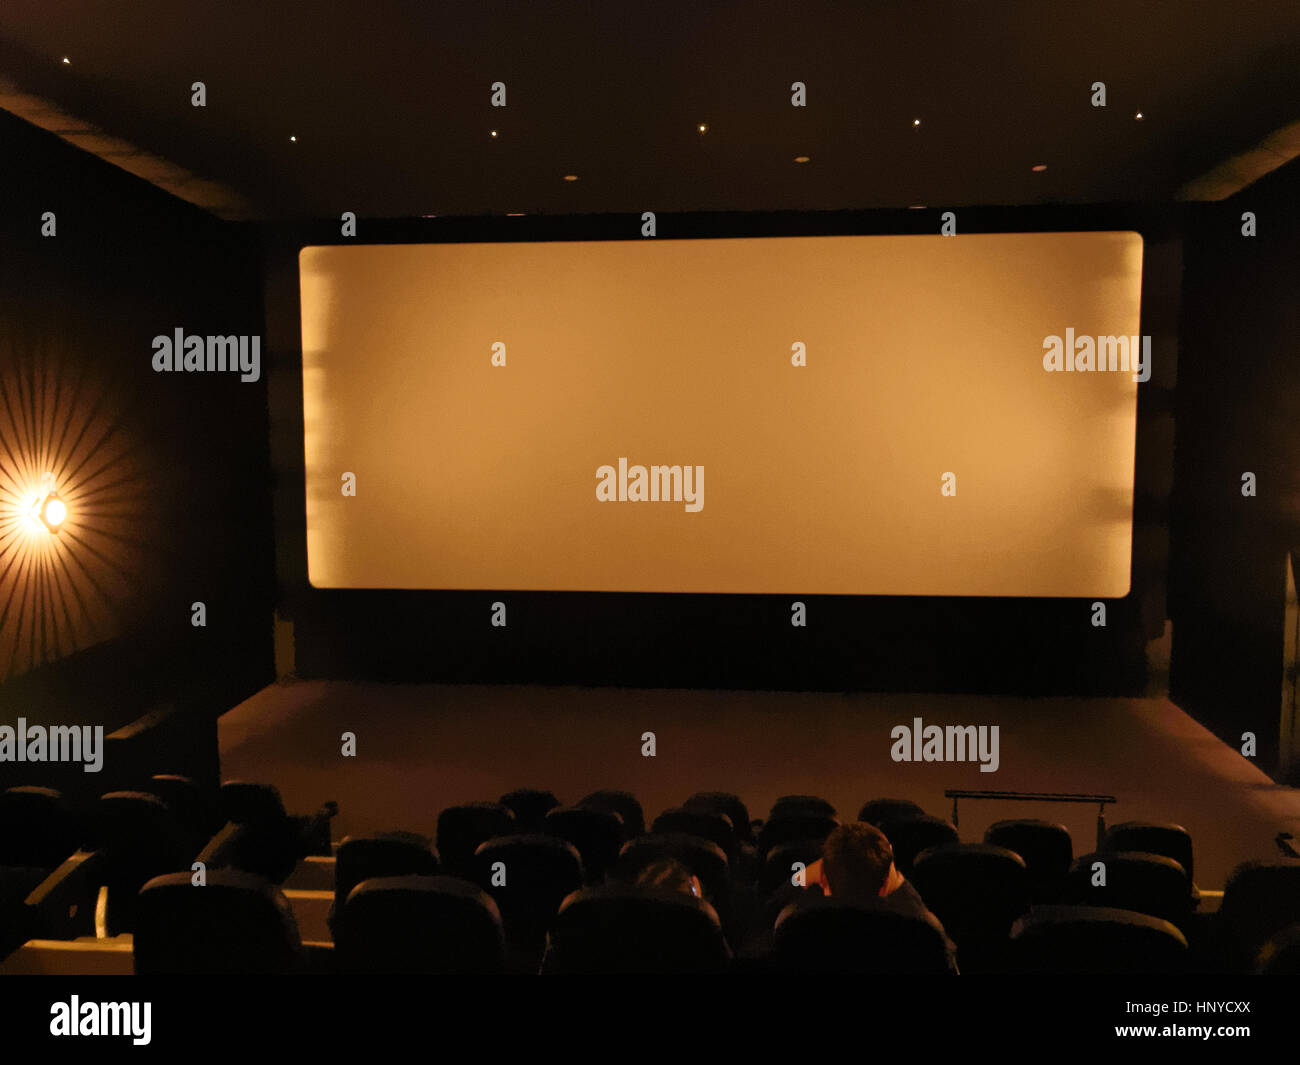 Intérieur du théâtre cinéma avec écran et lights out Banque D'Images